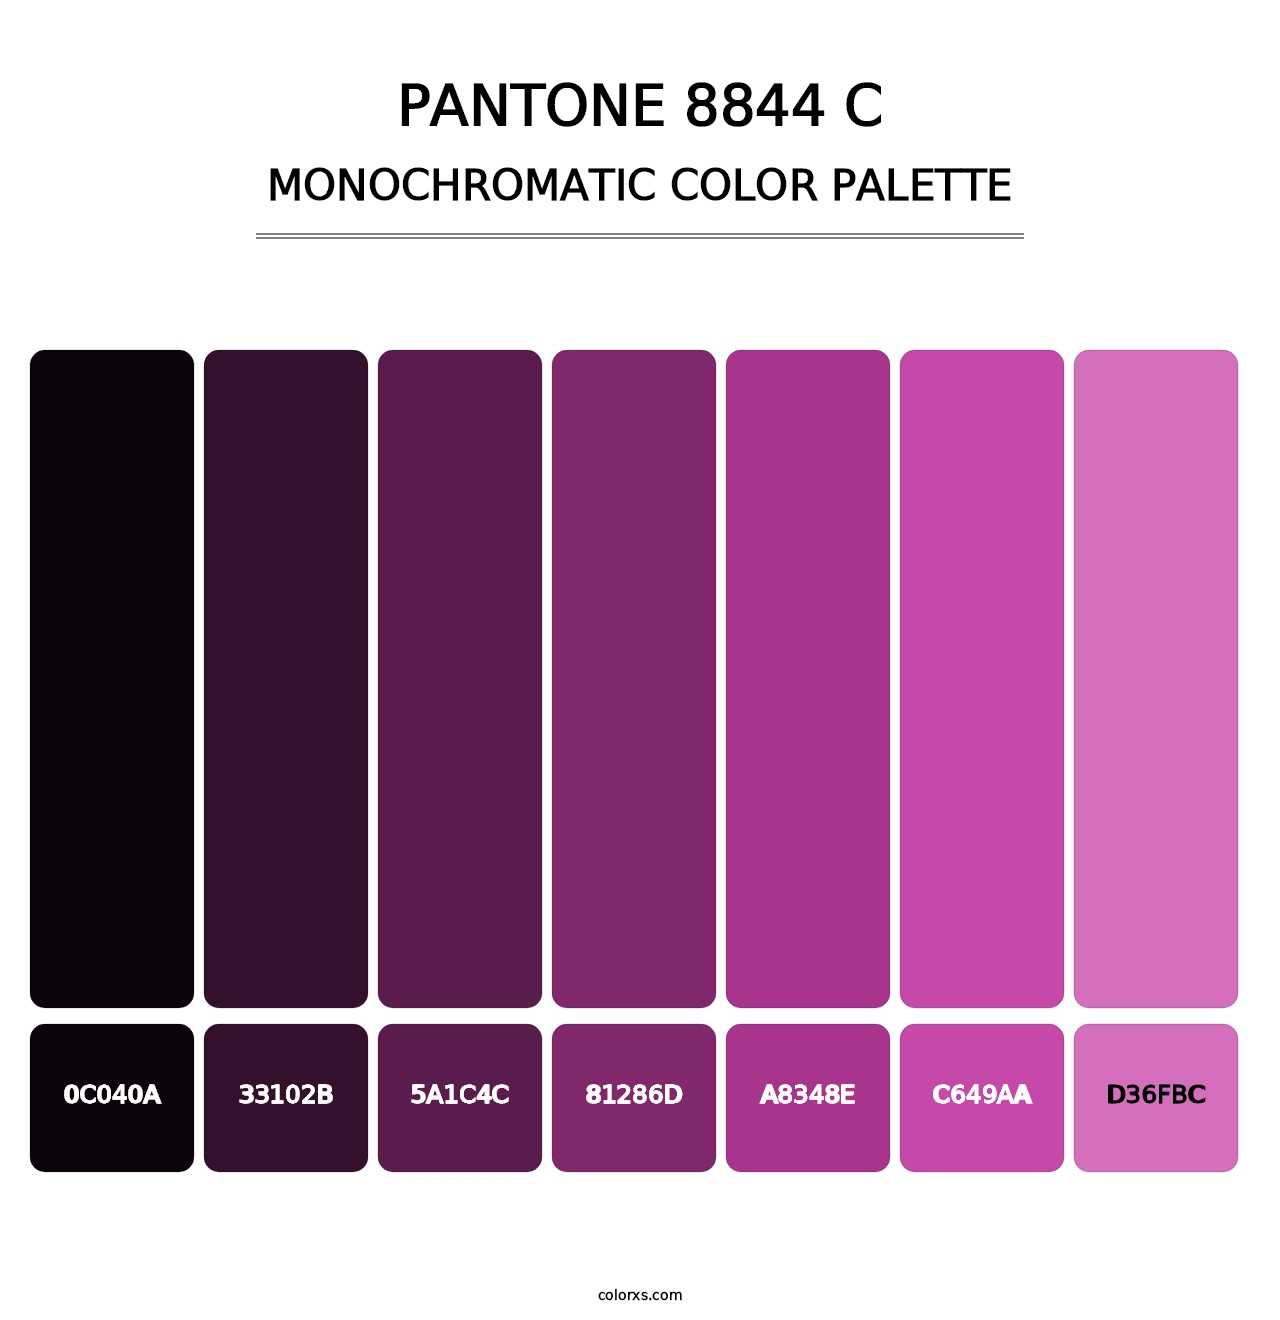 PANTONE 8844 C - Monochromatic Color Palette